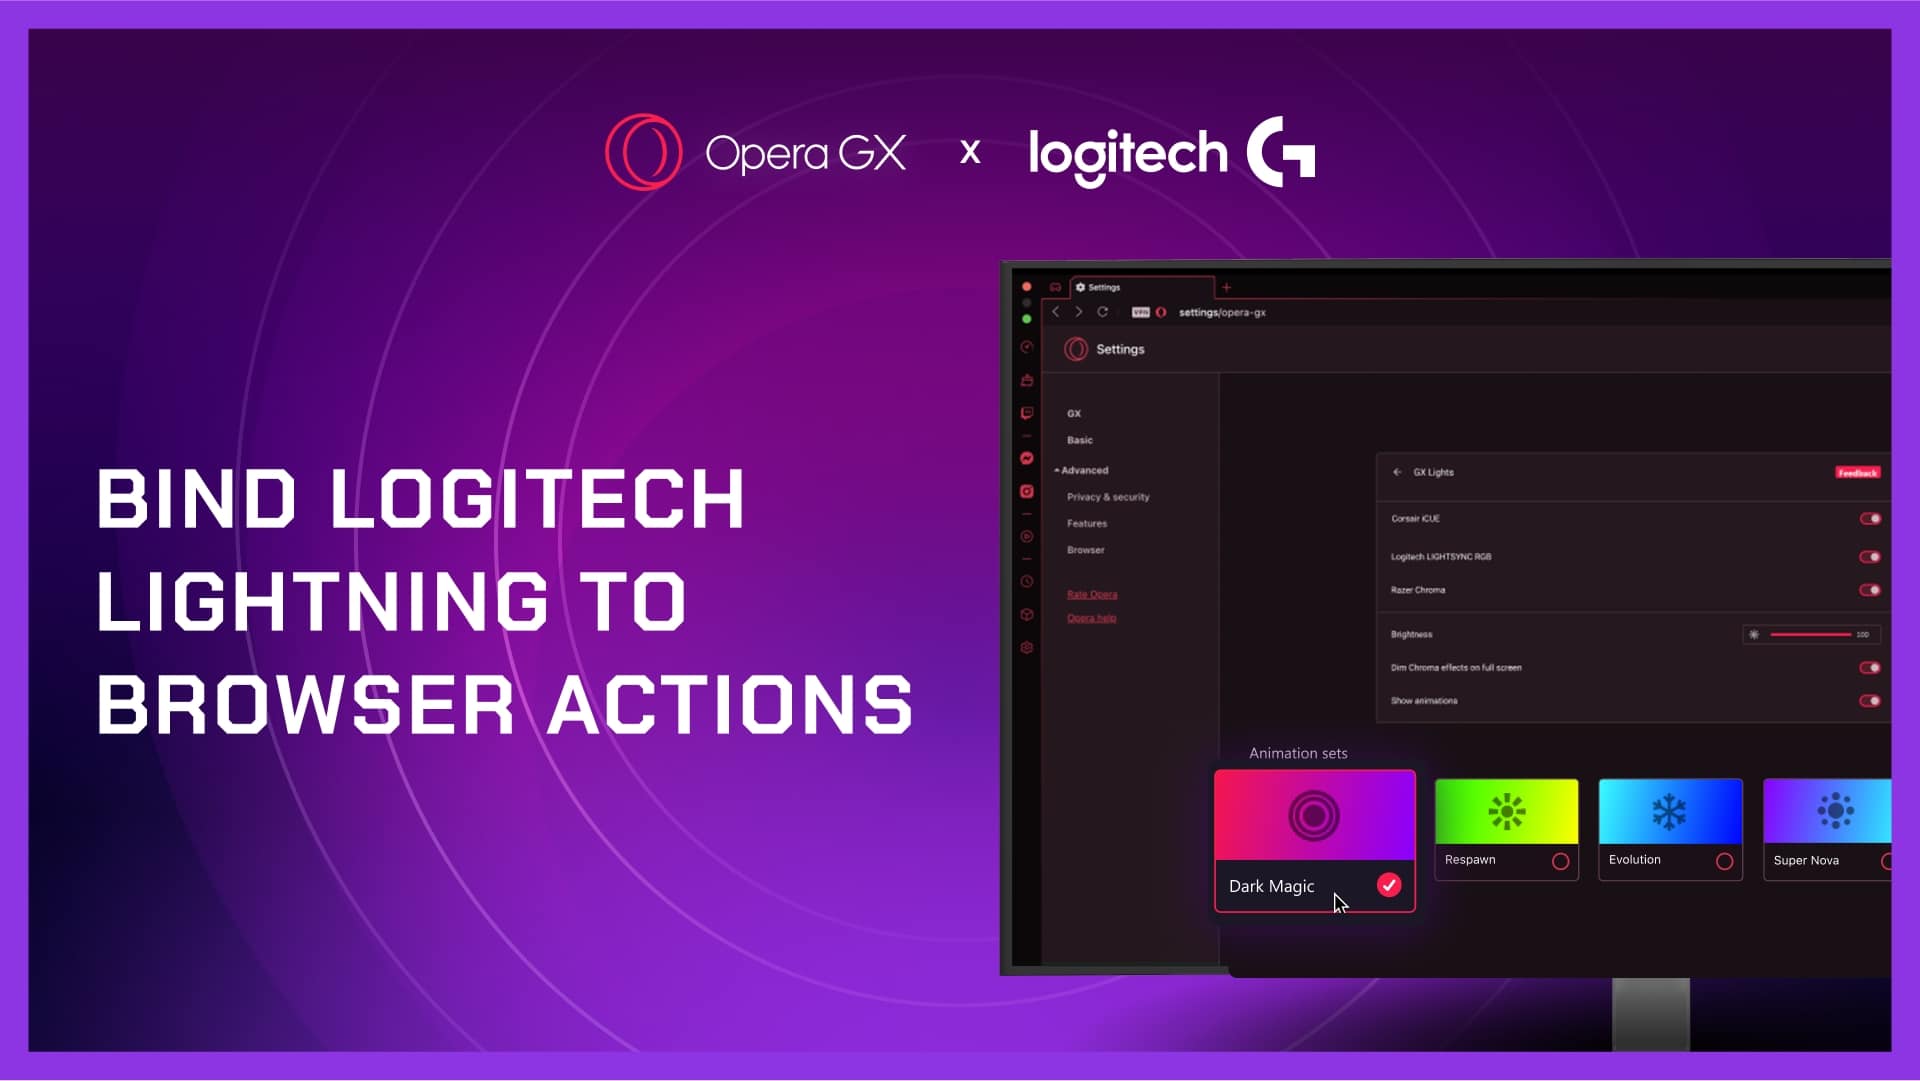 Navegador Opera GX inova em integração com a Logitech